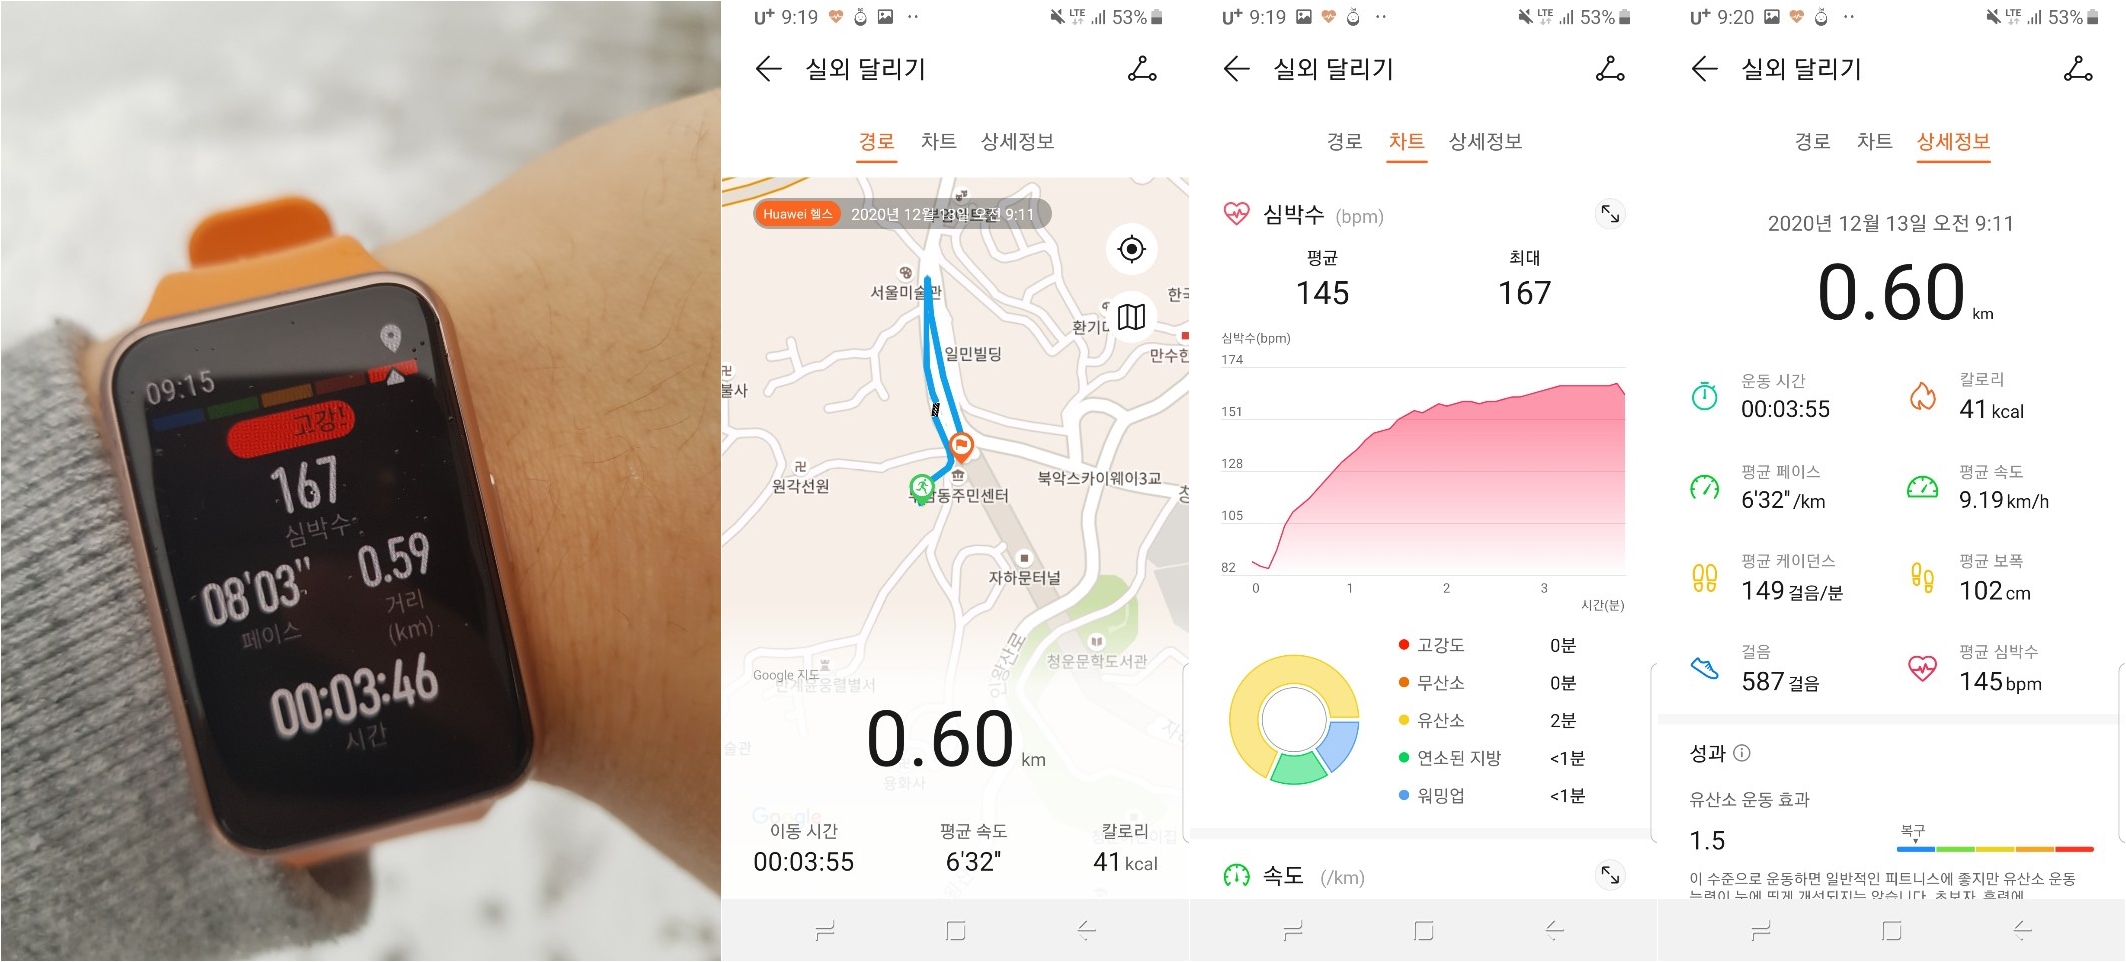 ▲  스크린 상에 운동 시간과 거리, 심박수 등을 실시간으로 확인할 수 있고, 운동 상태는 스마트폰 건강 앱에서도 확인할 수 있다.